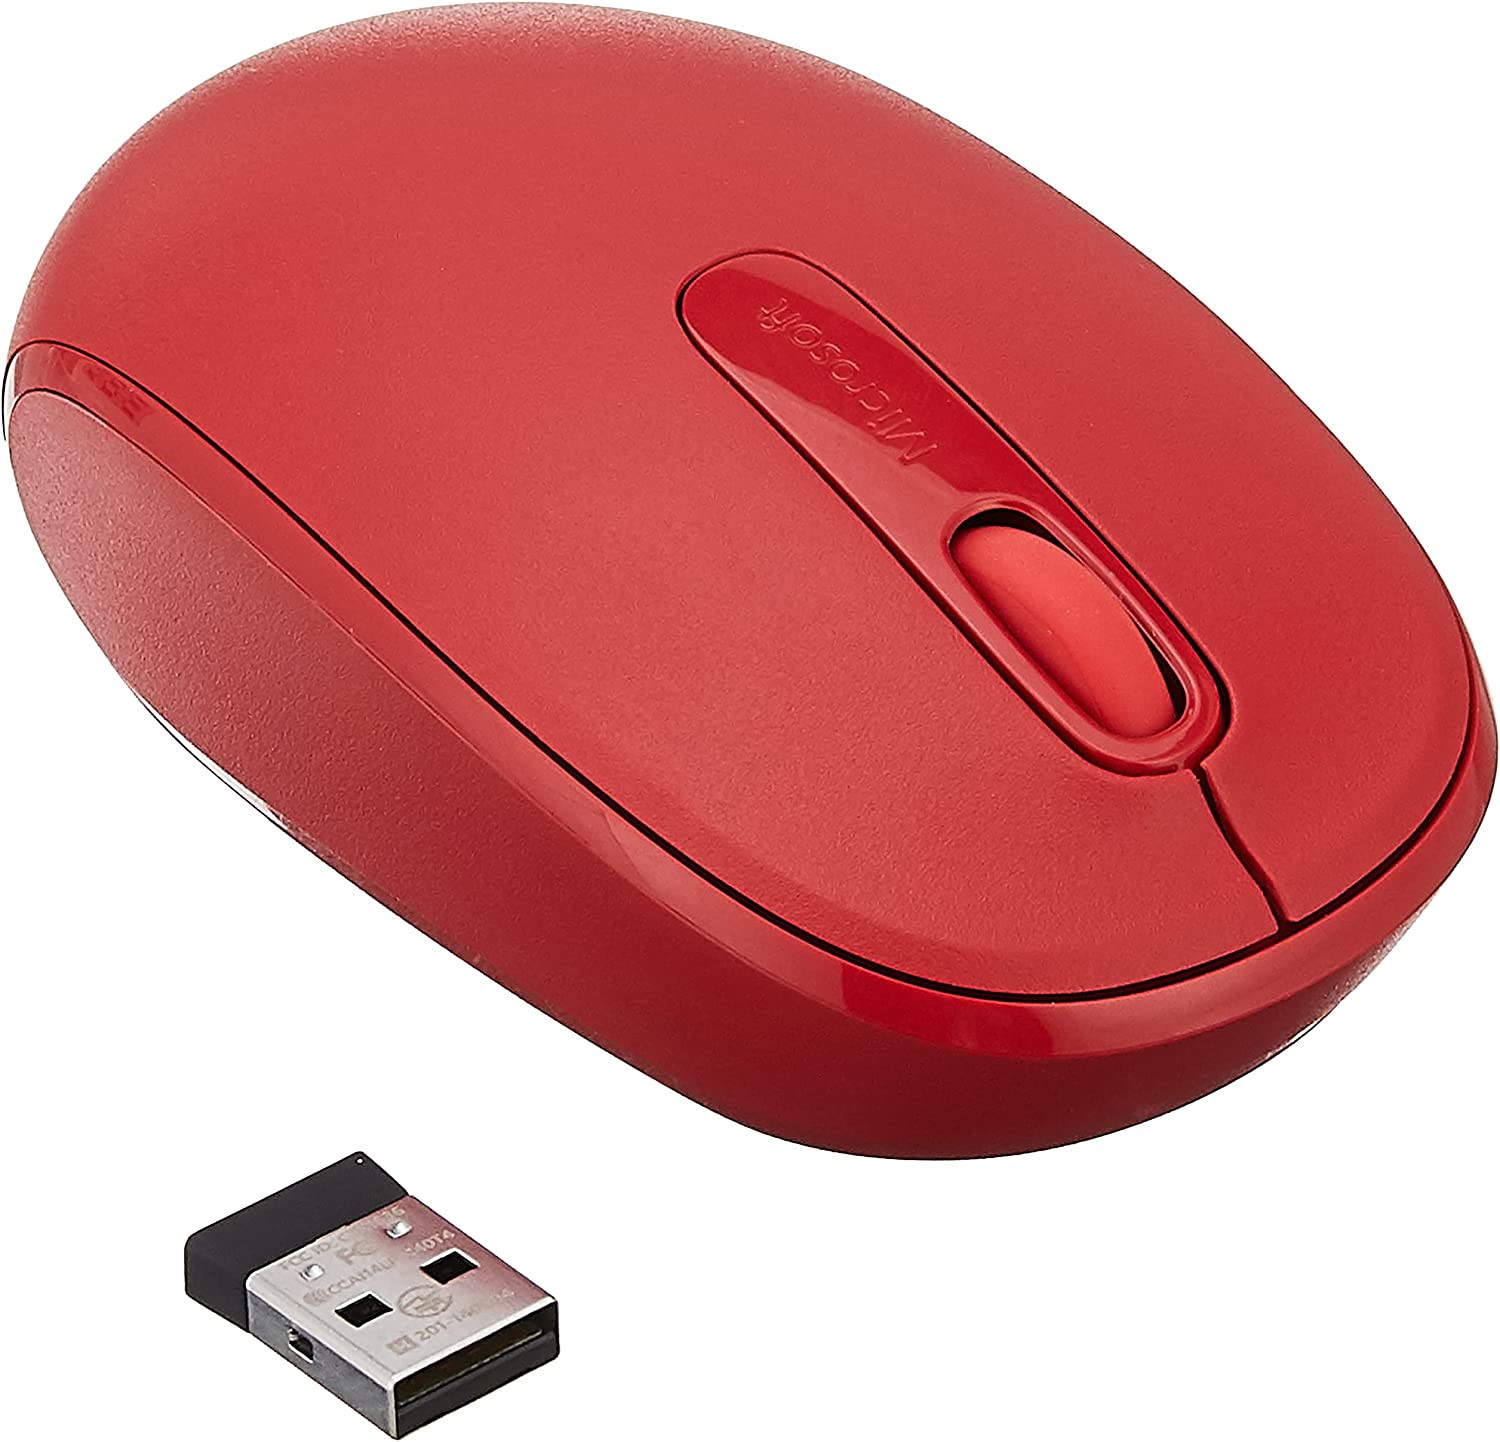 Мышь беспроводная Microsoft Wireless Mobile Mouse, оптическая светодиодная, Bluetooth, красный (U7Z-00035)